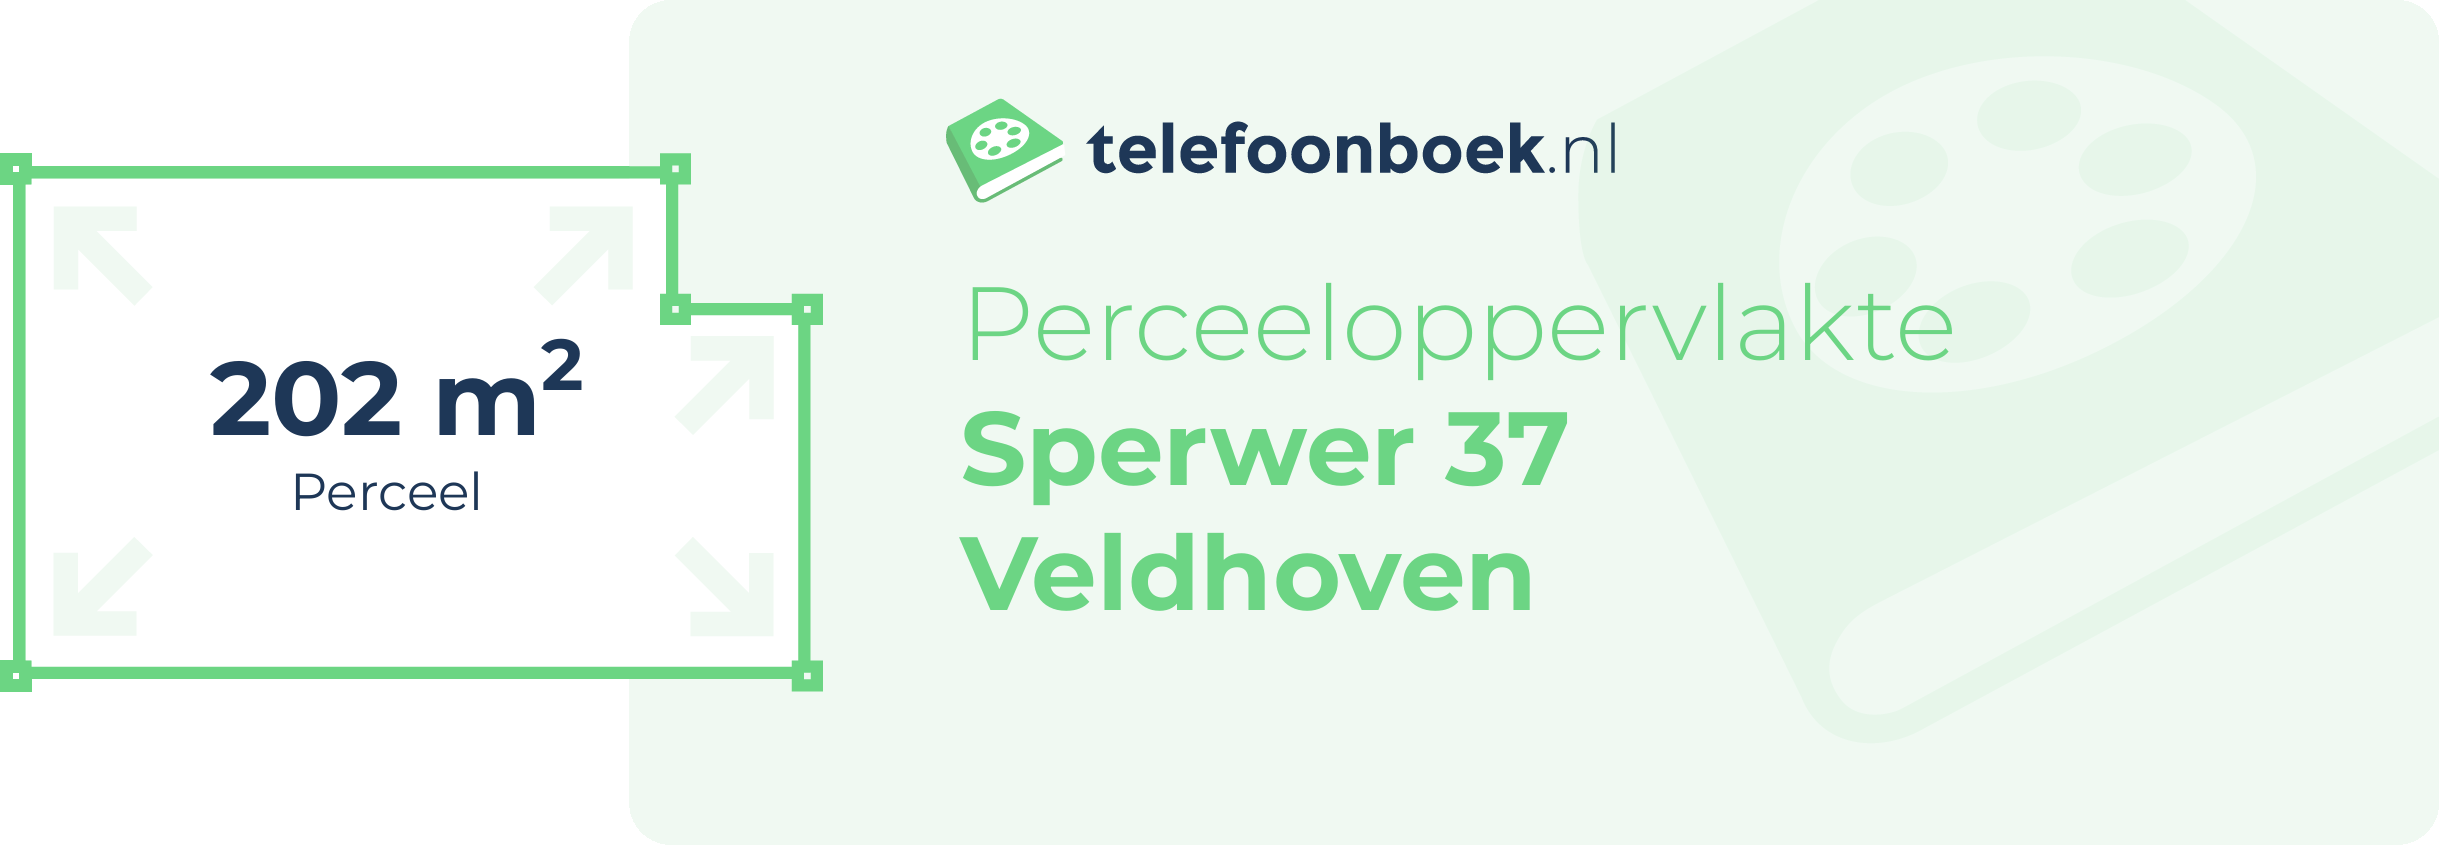 Perceeloppervlakte Sperwer 37 Veldhoven